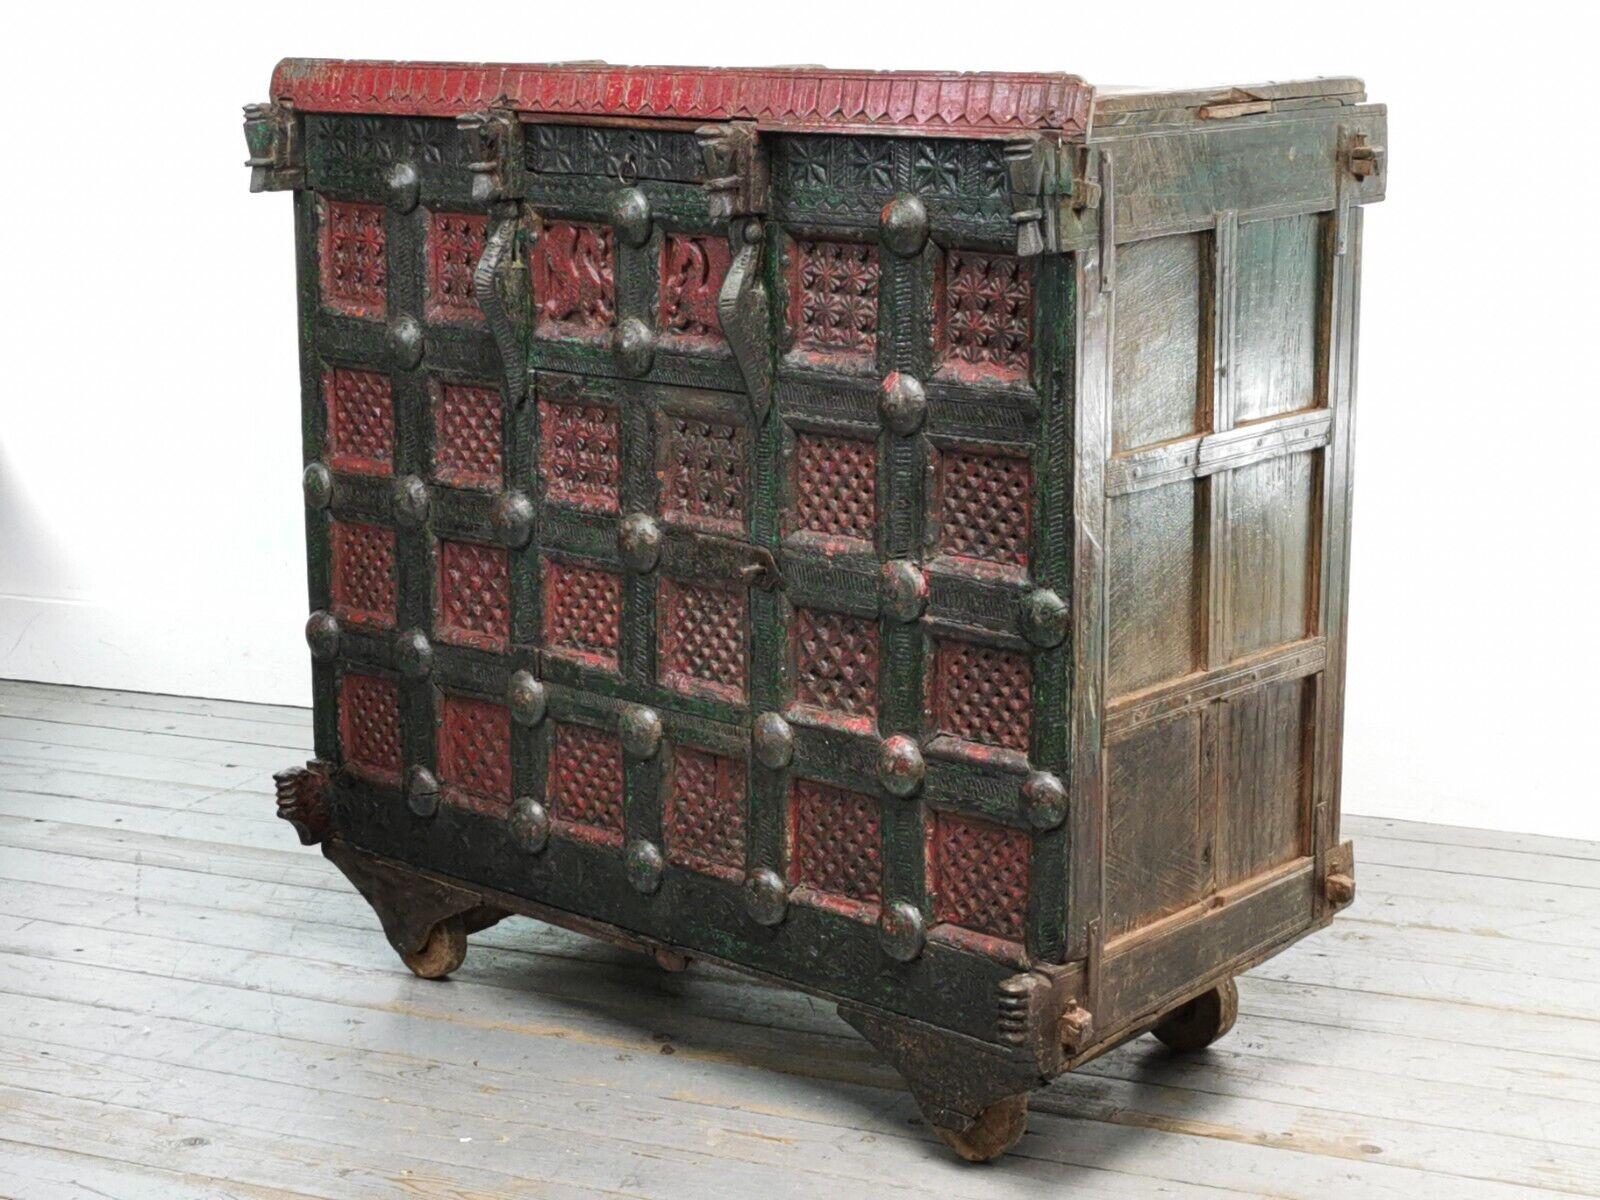 Antike indische Damchiya mit aufwendig geschnitztem Holz. Die traditionelle Schachtel wurde als Mitgift für indische Bräute verwendet und bei Hochzeiten verschenkt. Sie hat getäfelte Seiten und Geheimfächer und wurde früher zur Aufbewahrung von